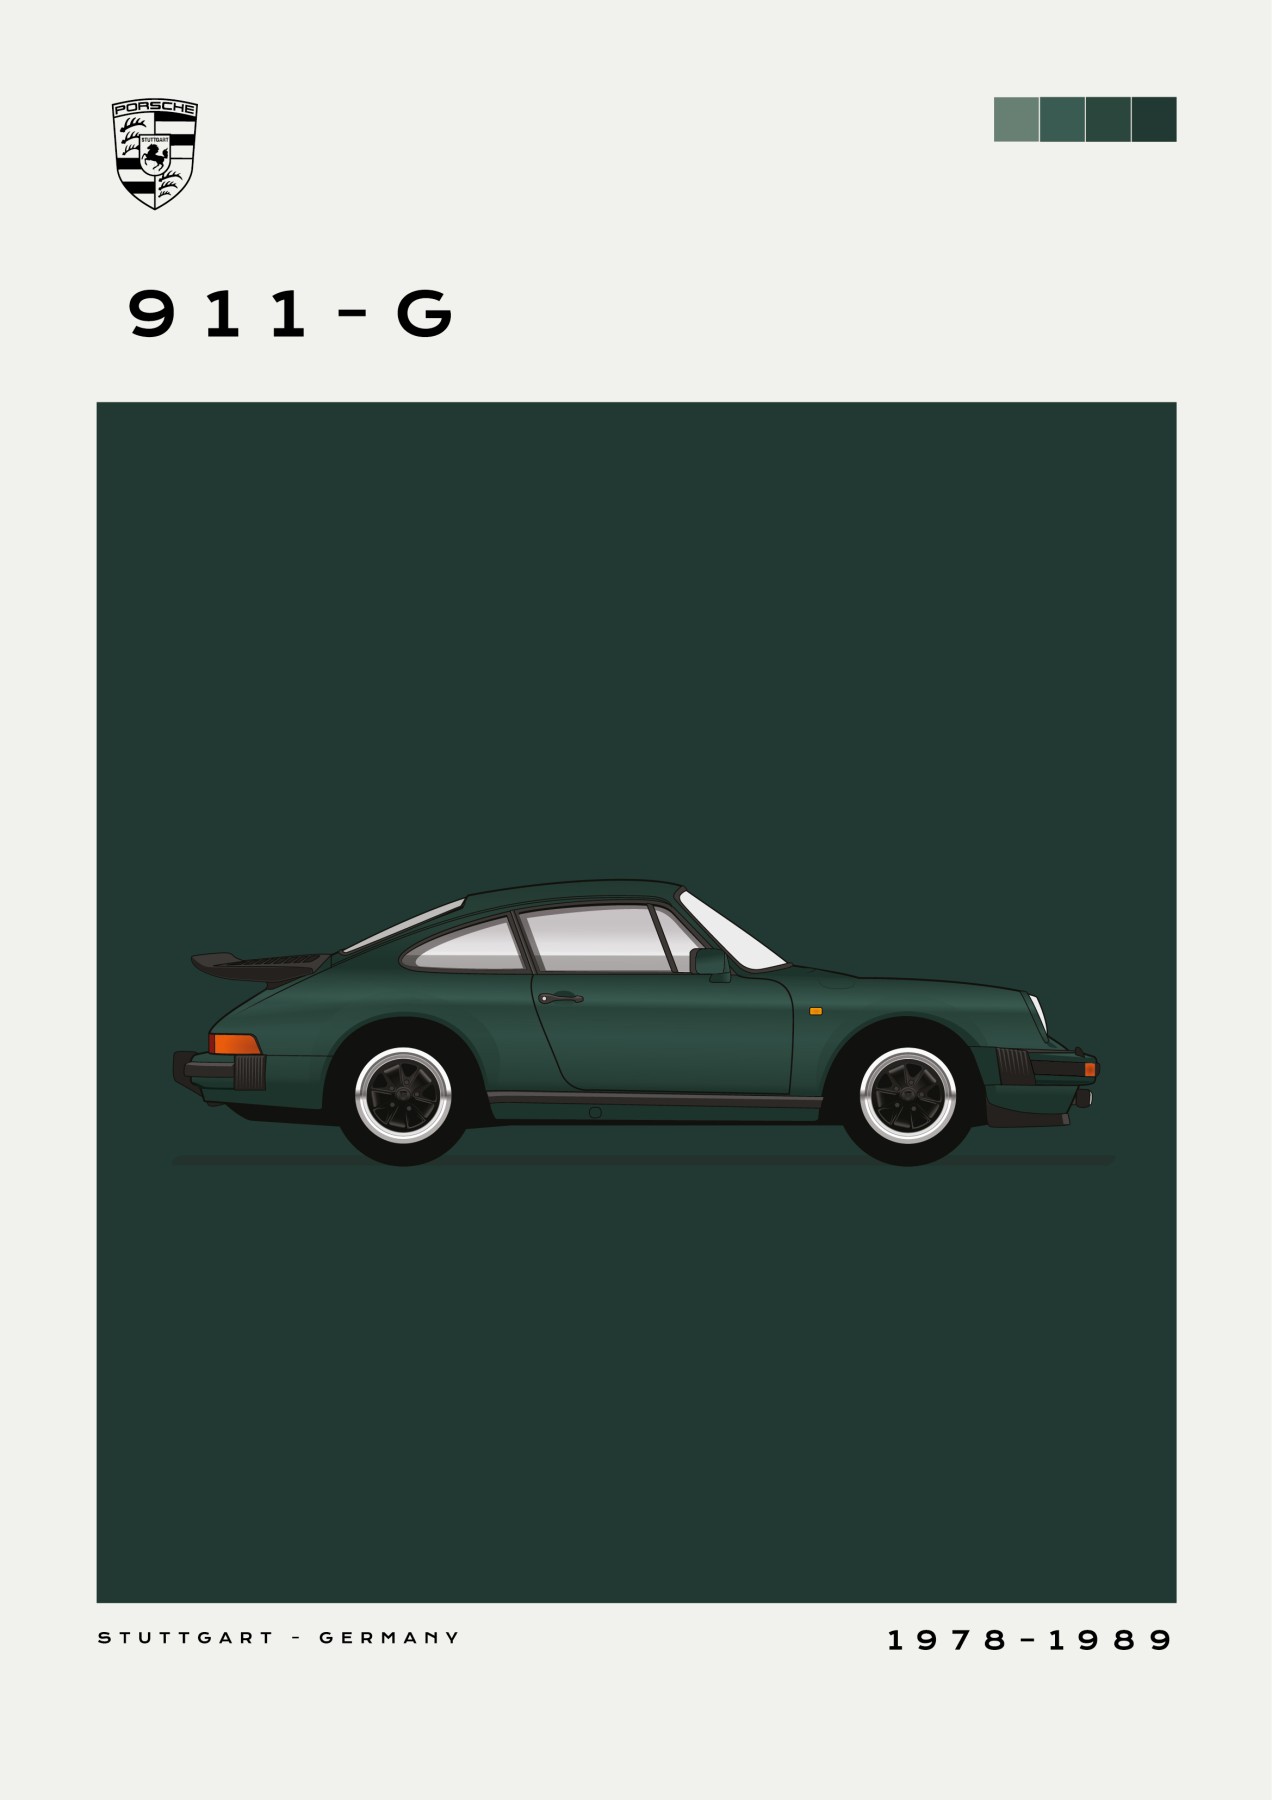 Porsche – 911-G- Green